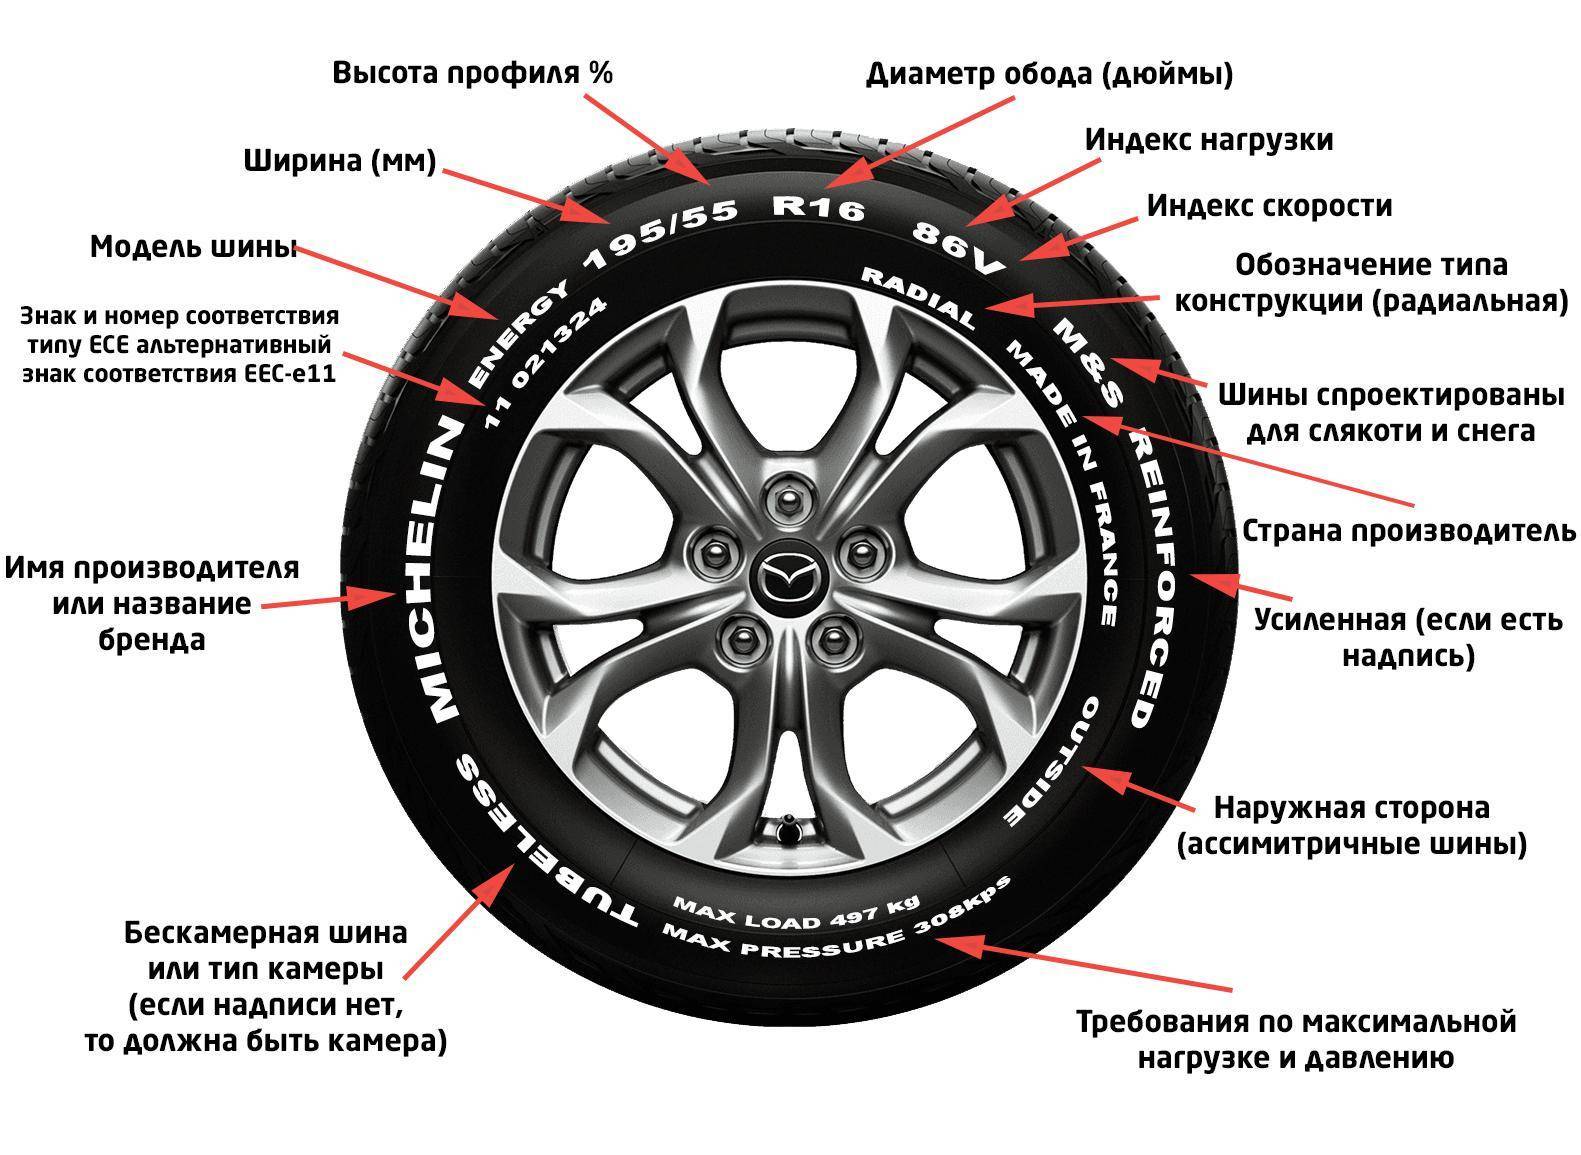 Все о маркировке шин легкового автомобиля, расшифровка обозначений, цифр, букв и значков существующих на резине